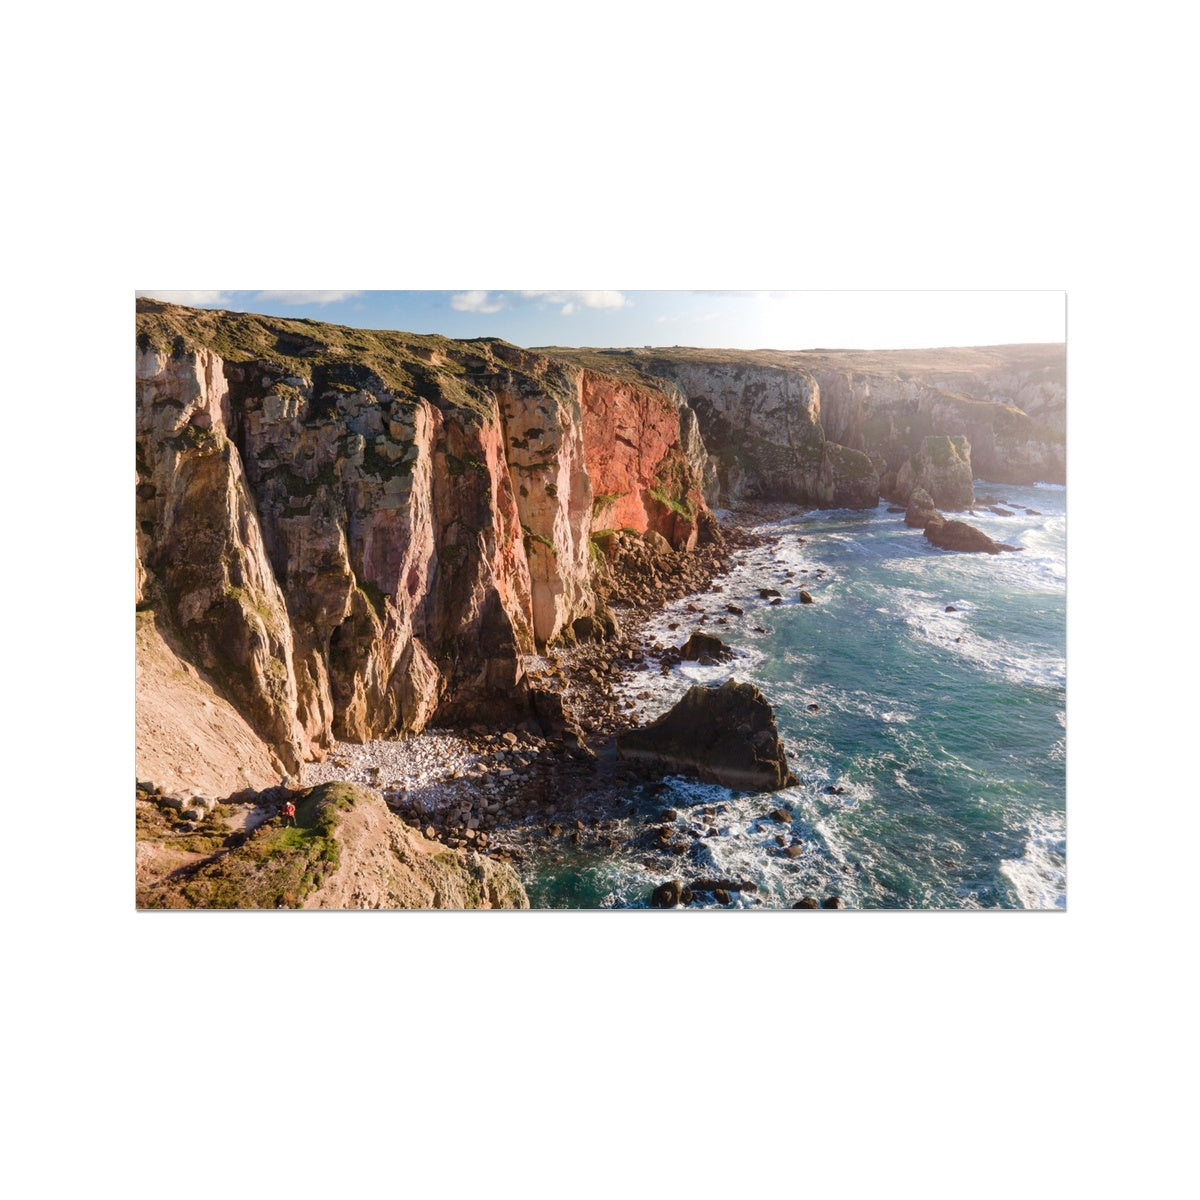 Cligga Cliff Colours ~ Photograph